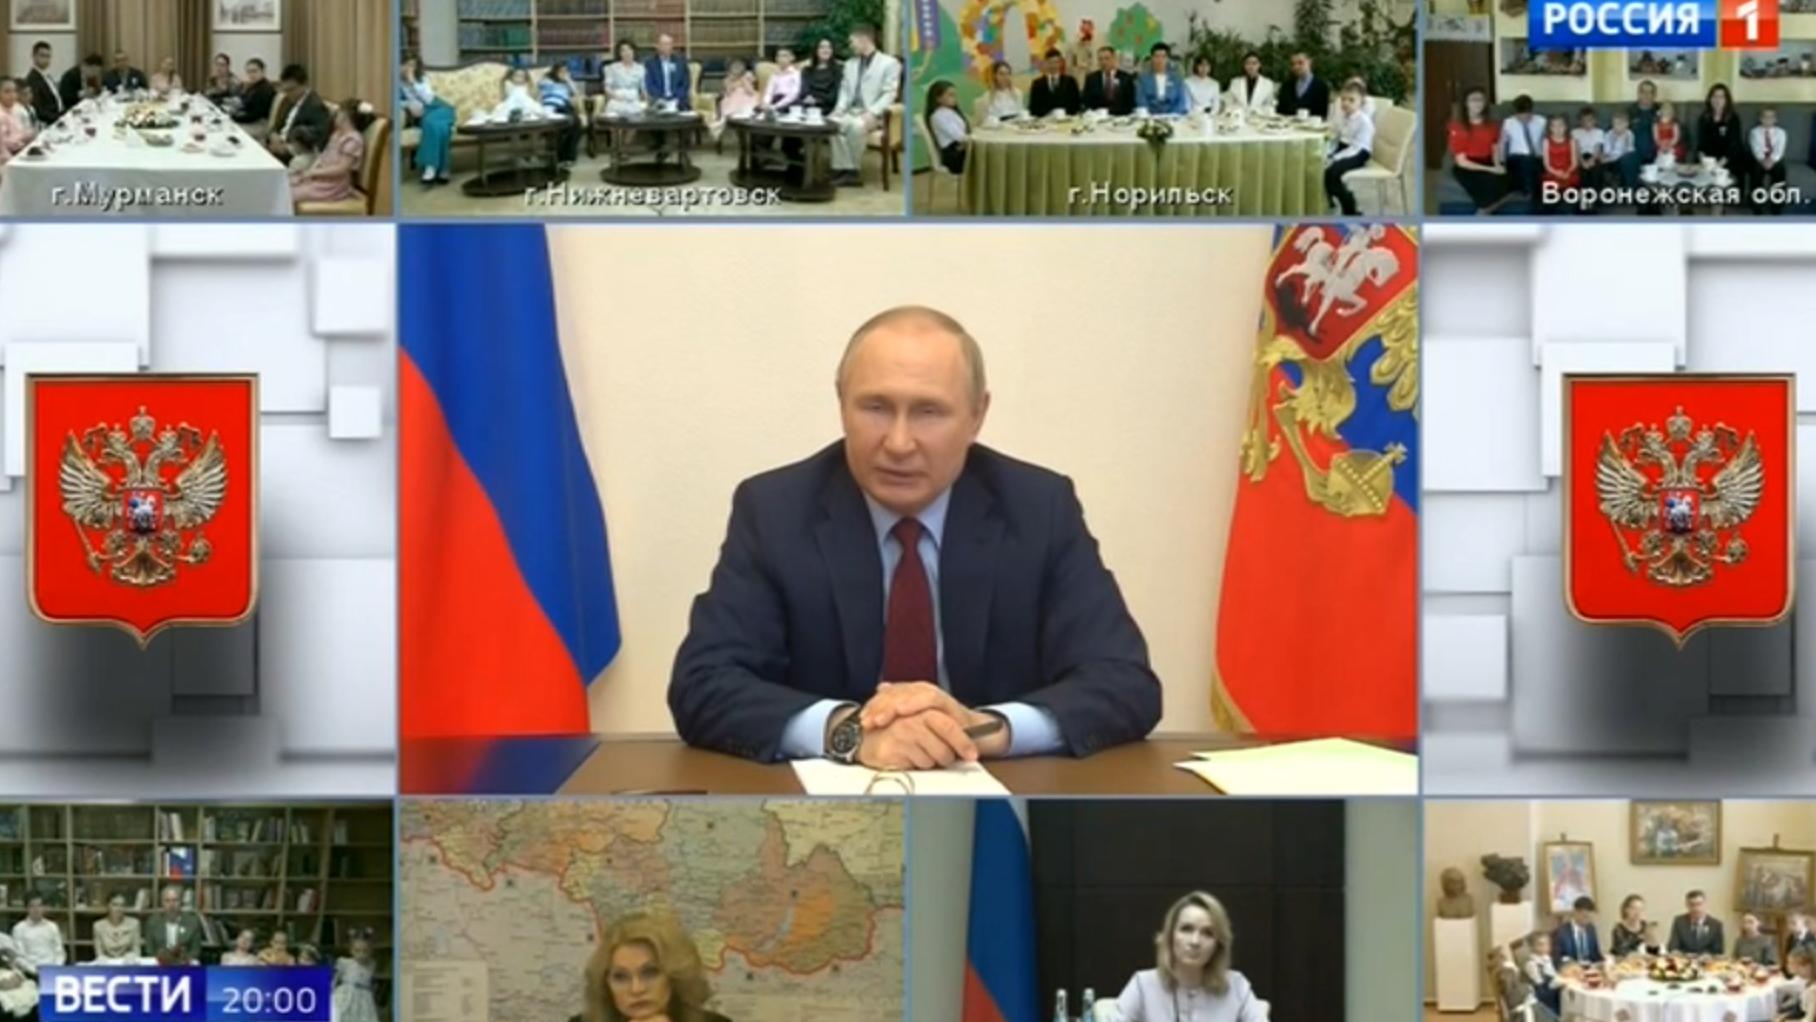 Telekonferencja Putina z wielodzietnymi rodzinami. Siedzą one na krzesłach przed monitorami